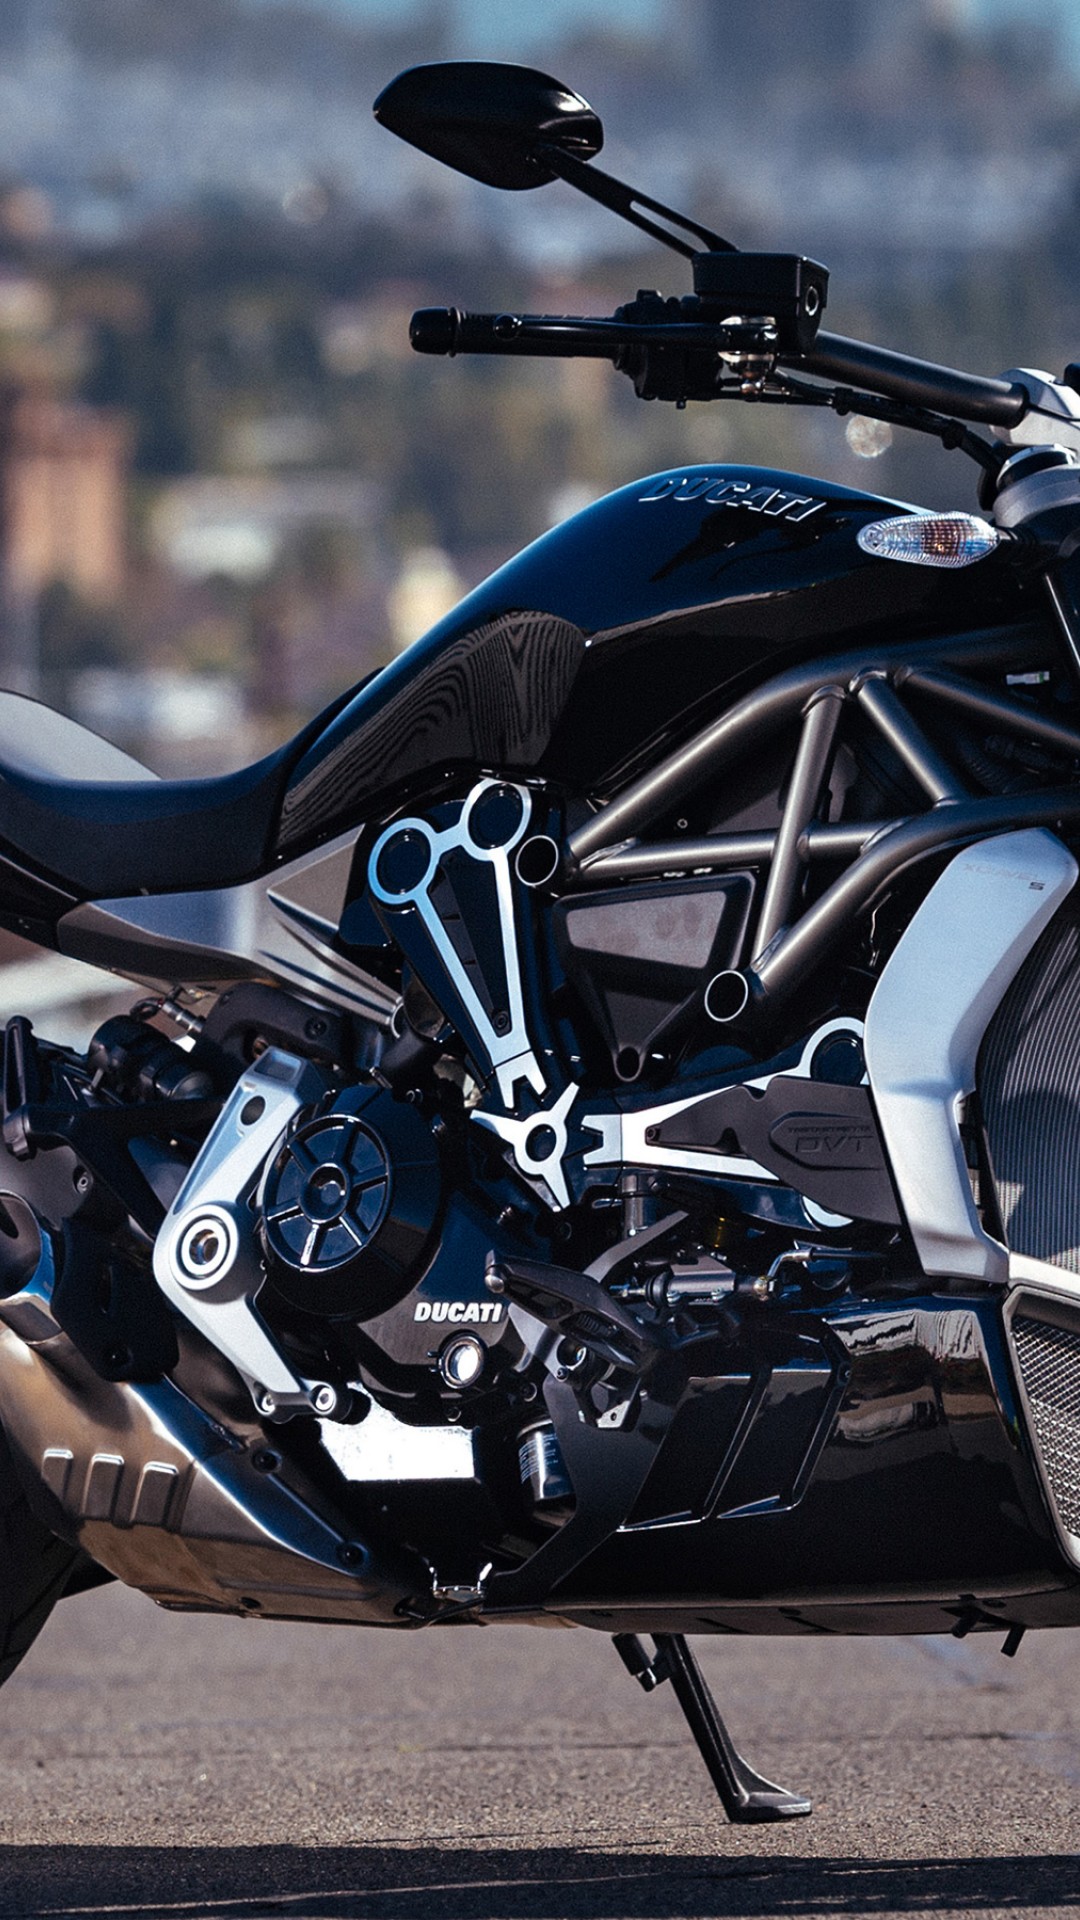 Ducati Diavel Bike Hd Wallpaper for Desktop and Mobiles iPhone 6 / 6S Plus  - HD Wallpaper 